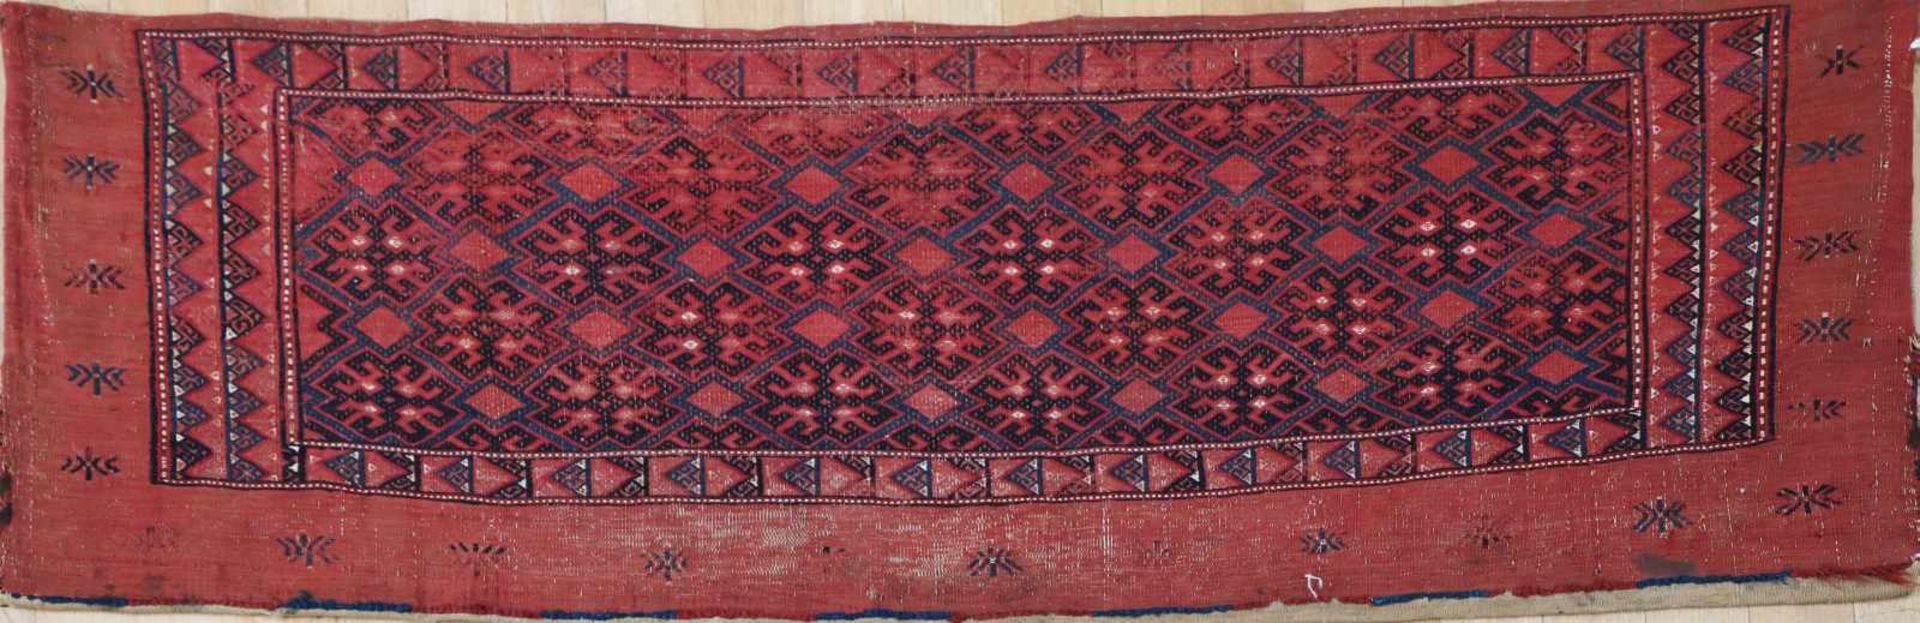 Antike turkmenische Zeltbahnum 1900, rotgrundig, geometrisches Dekor, ca. 47x130cm, Altersspuren,